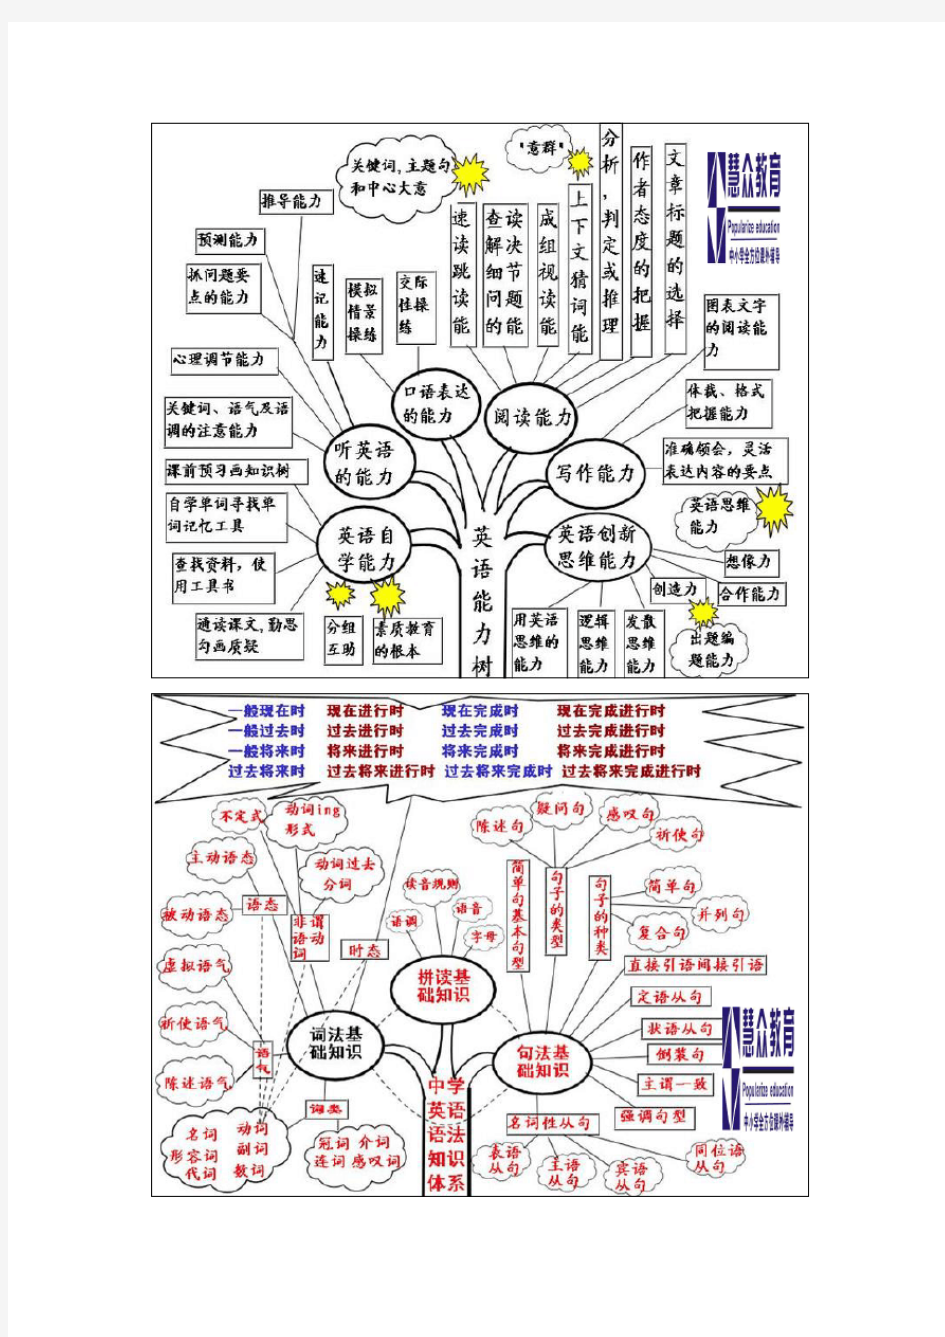 初中英语语法知识树(图形)